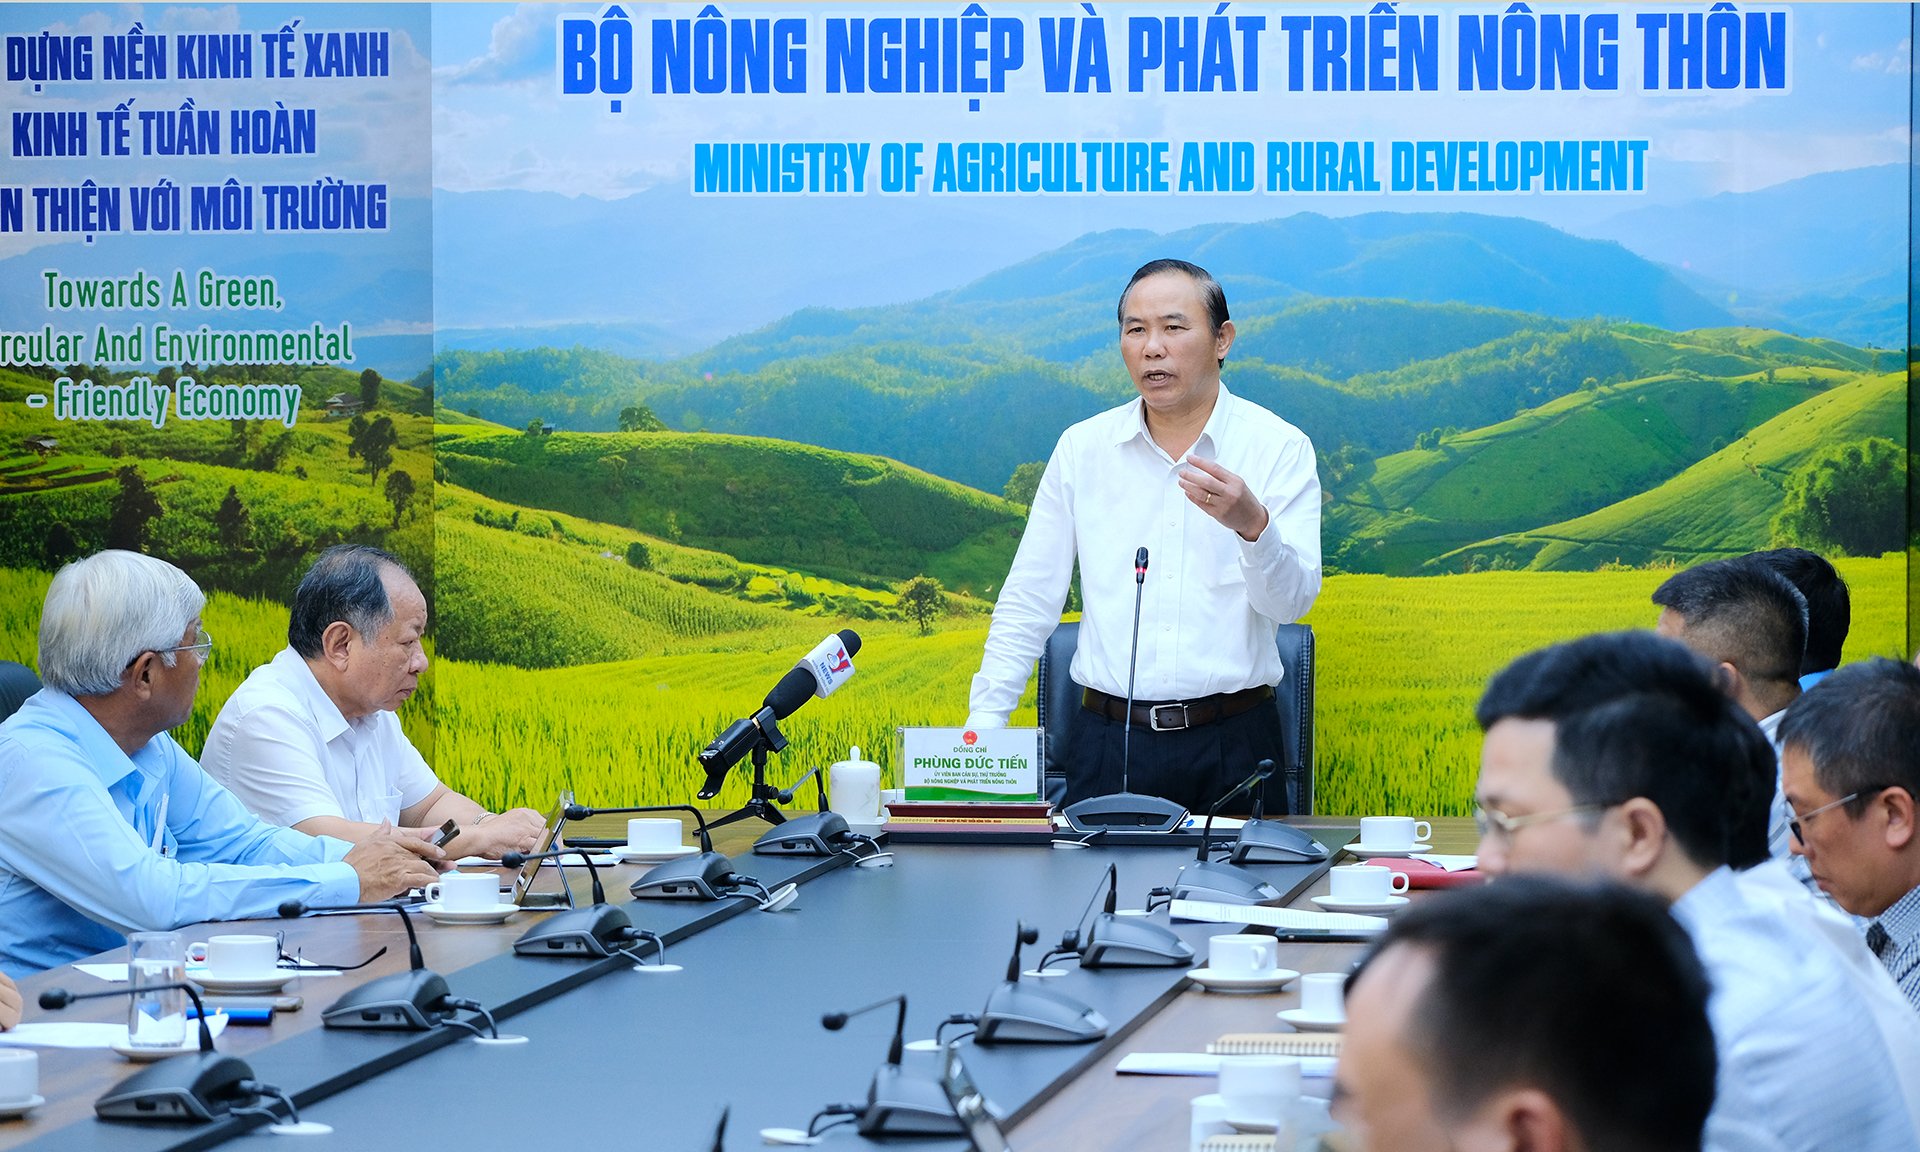 Việt Nam đã thu 7 tỷ USD từ thủy sản, Bộ NNPTNT họp với 9 hiệp hội ngành hàng xây dựng chuỗi liên kết  - Ảnh 1.